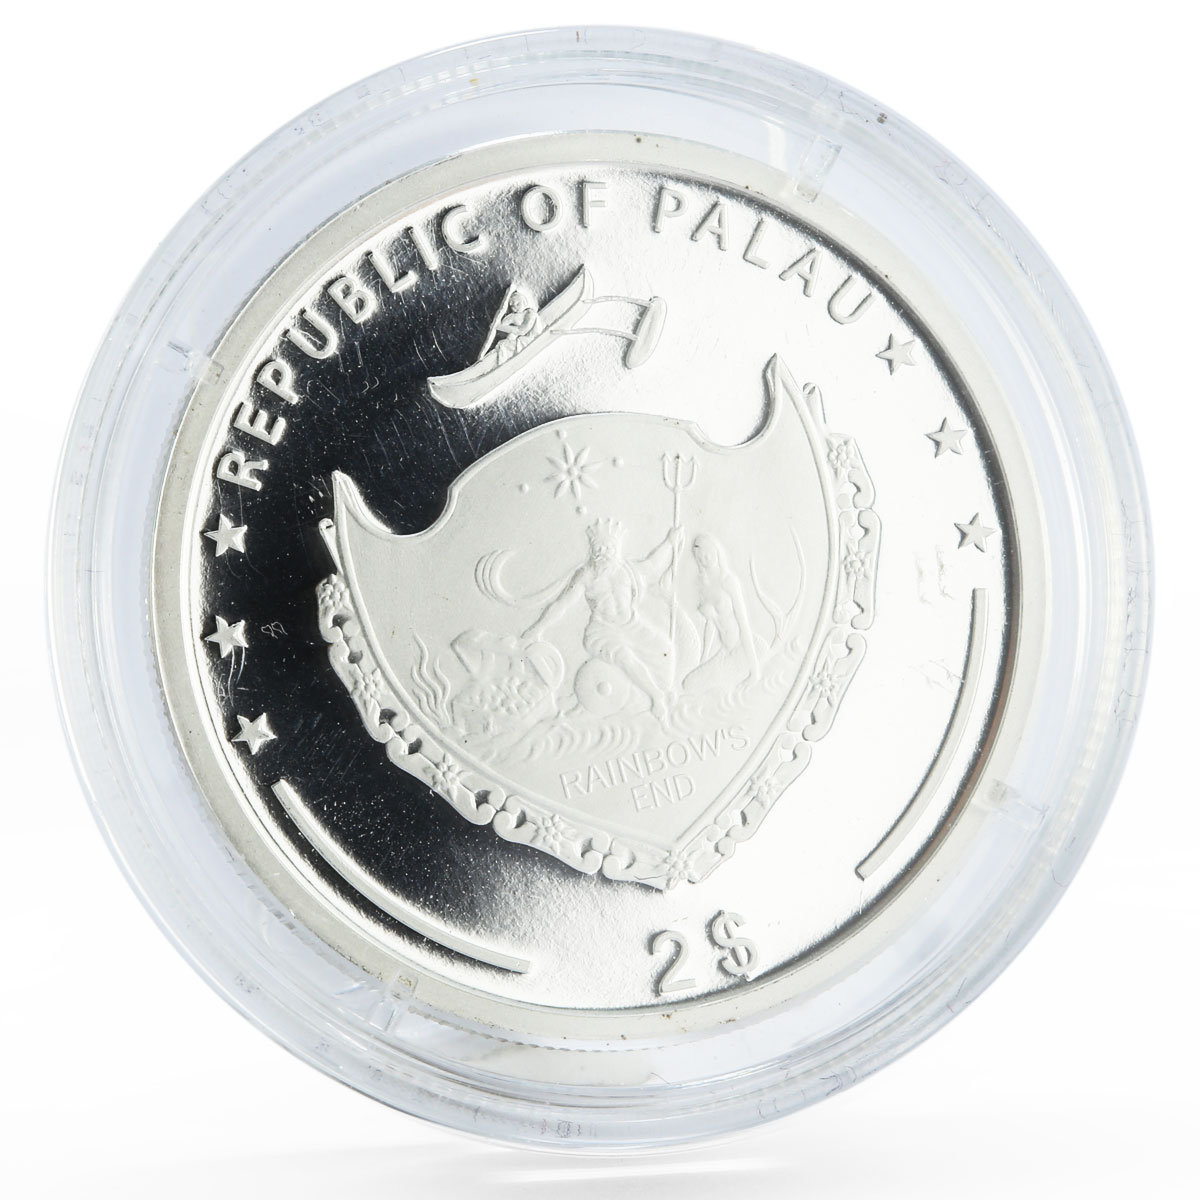 Palau 2 dollars 60th Anniversary of Ferrari 126 C2 Bolide silver coin 2007